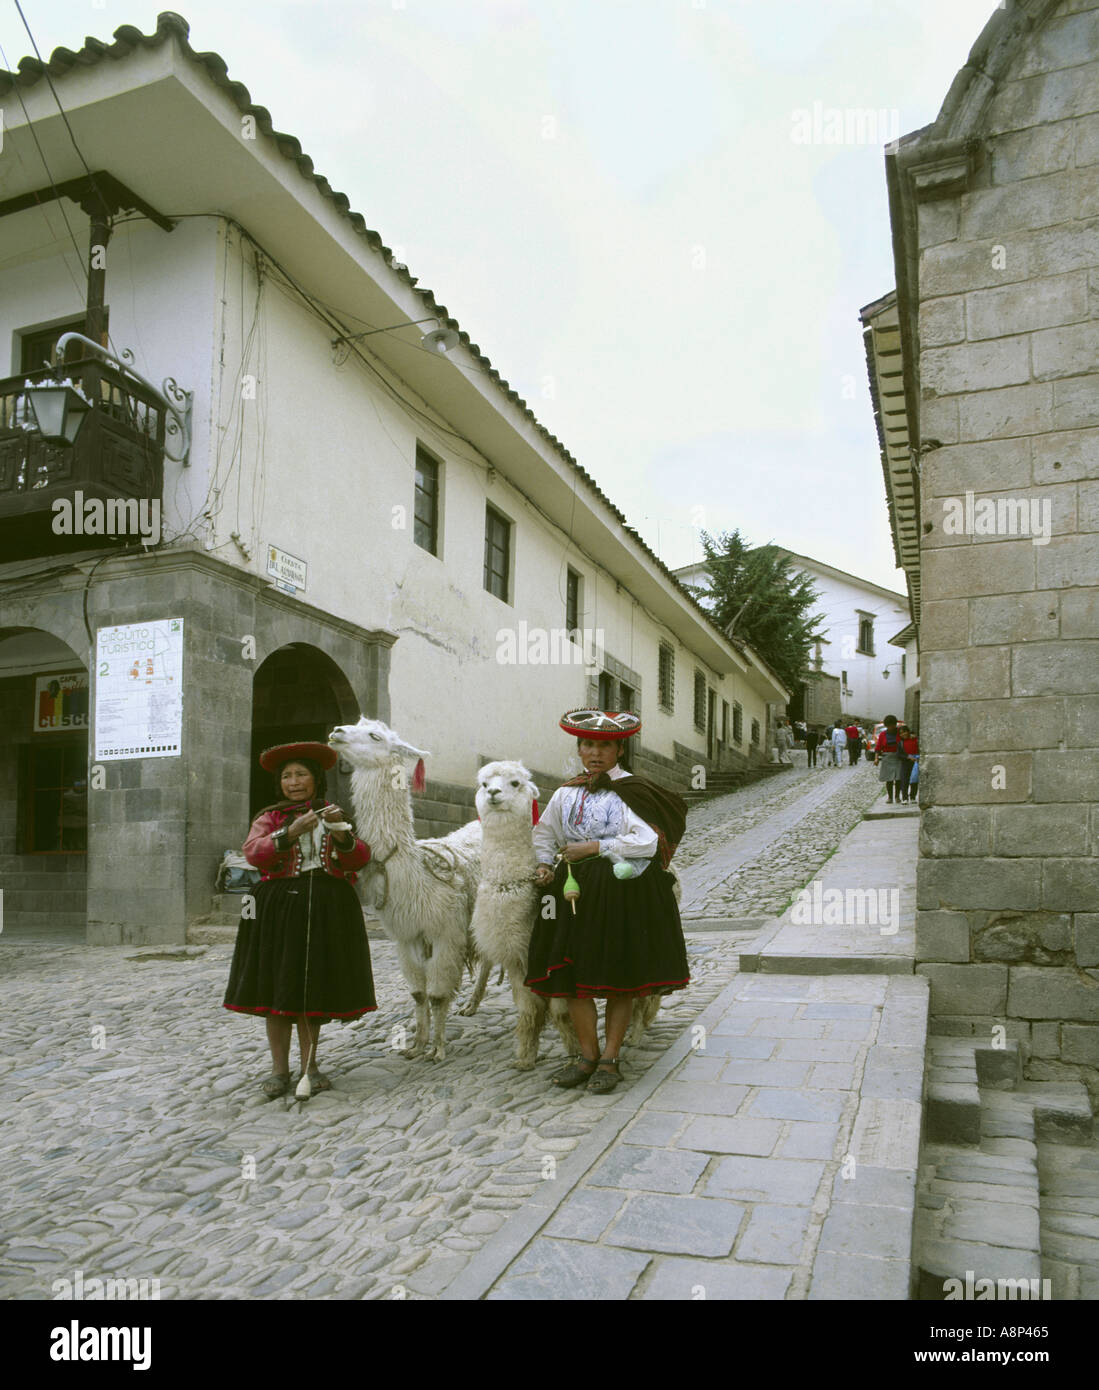 Cuzco Pérou femmes dans inca typique robe et de tourner avec des Lamas damées dans une rue pavée de prestations de touristes Banque D'Images